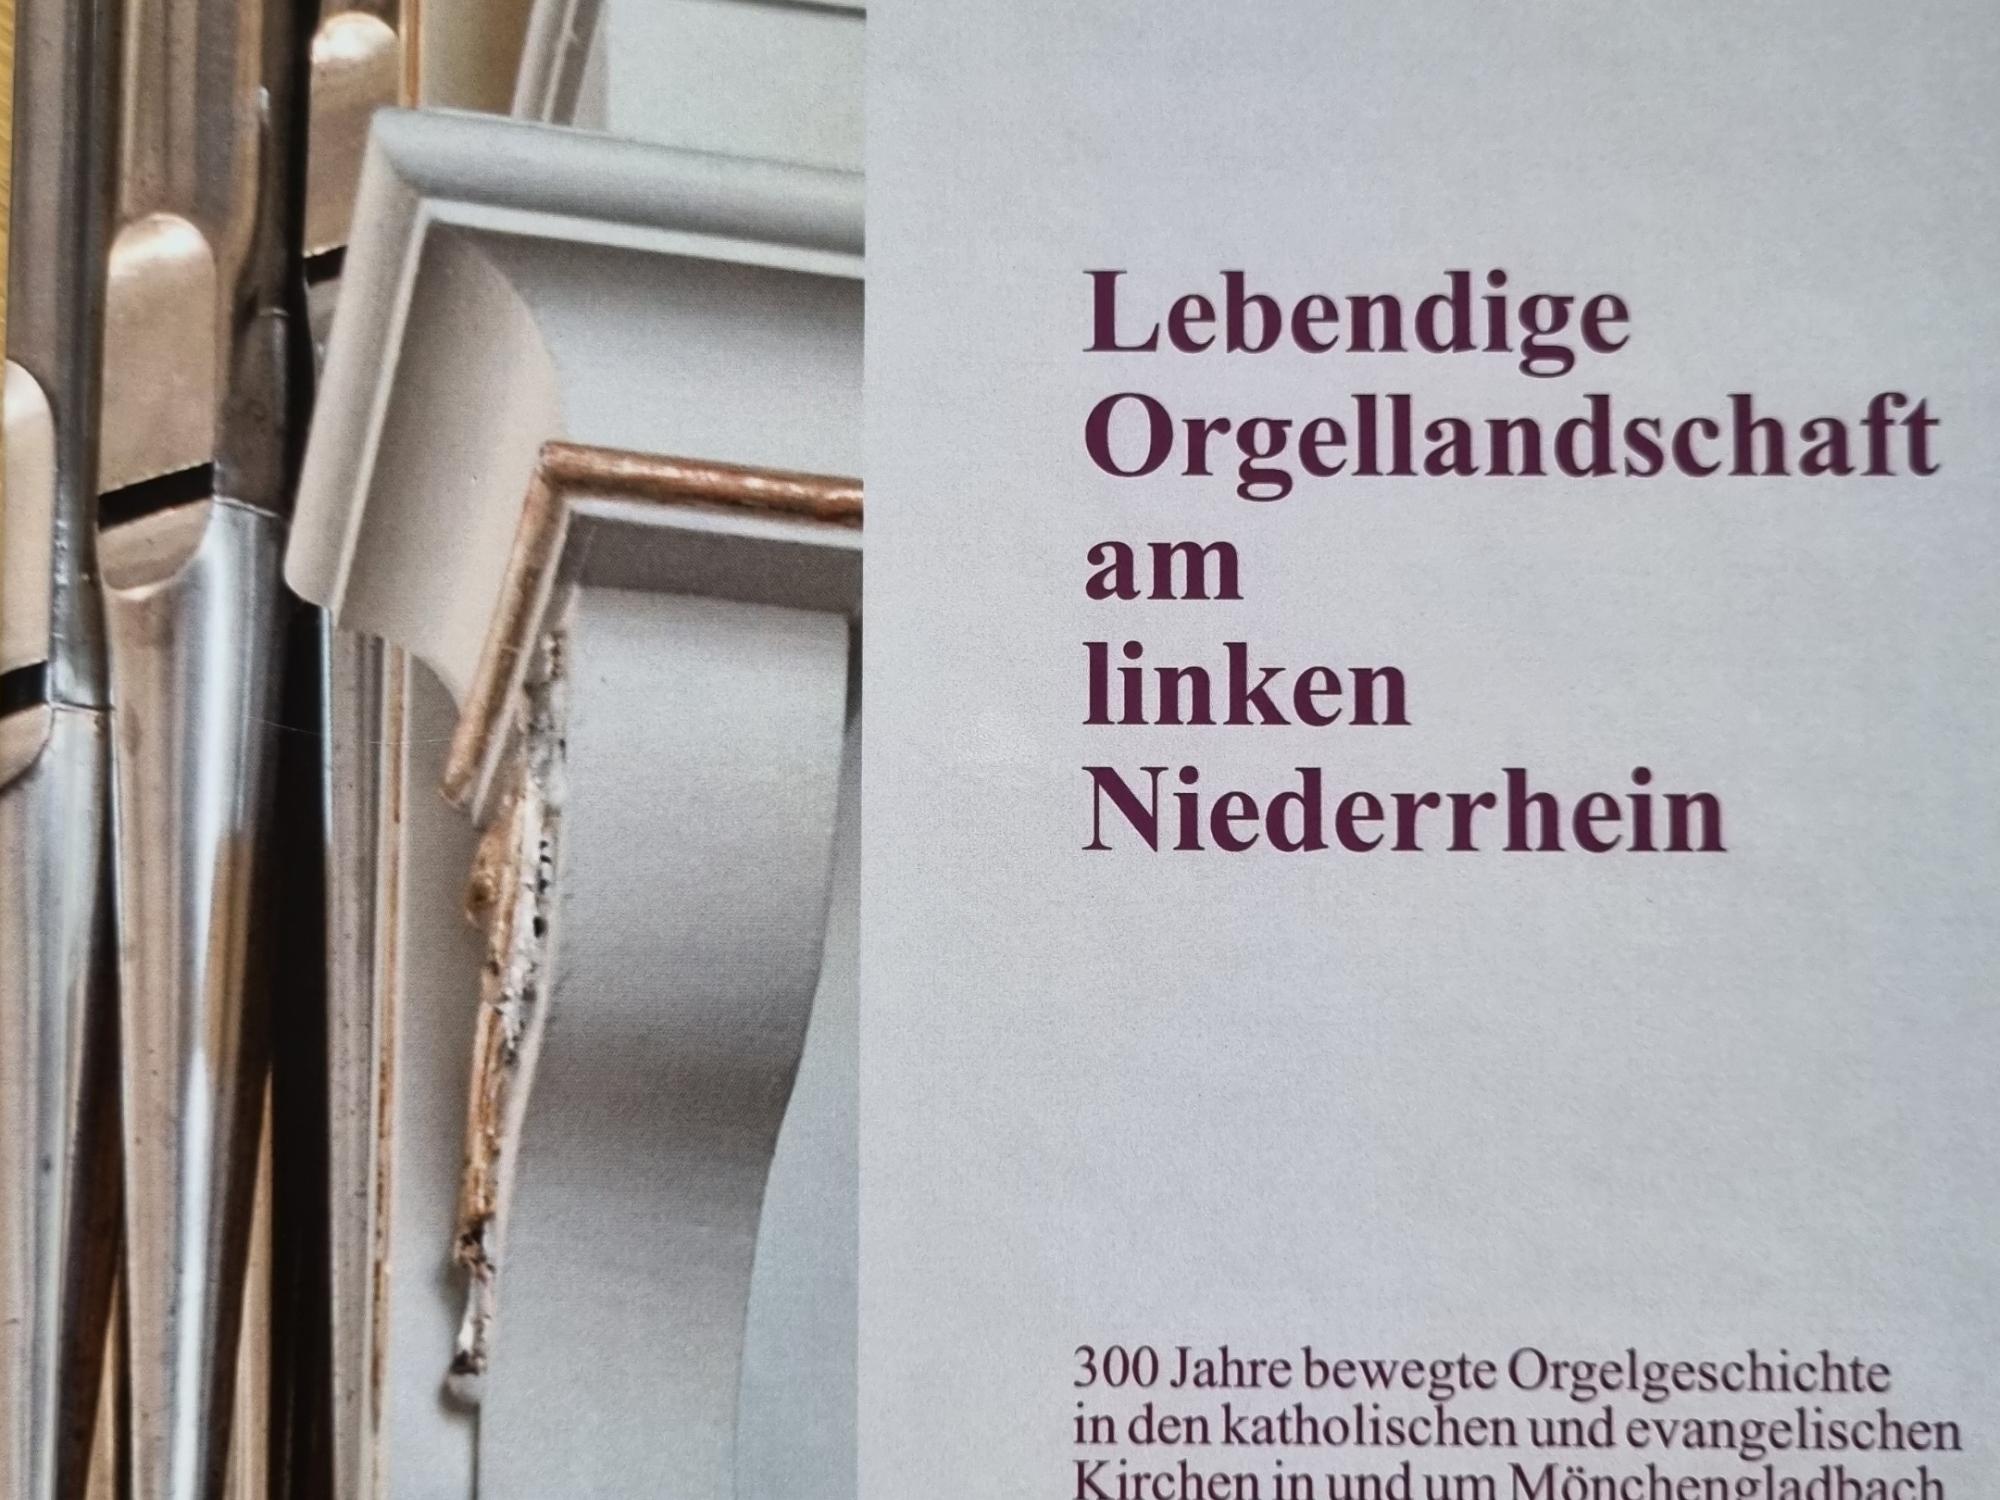 das Buch ‚Lebendige Orgellandschaft am linken Niederrhein‘